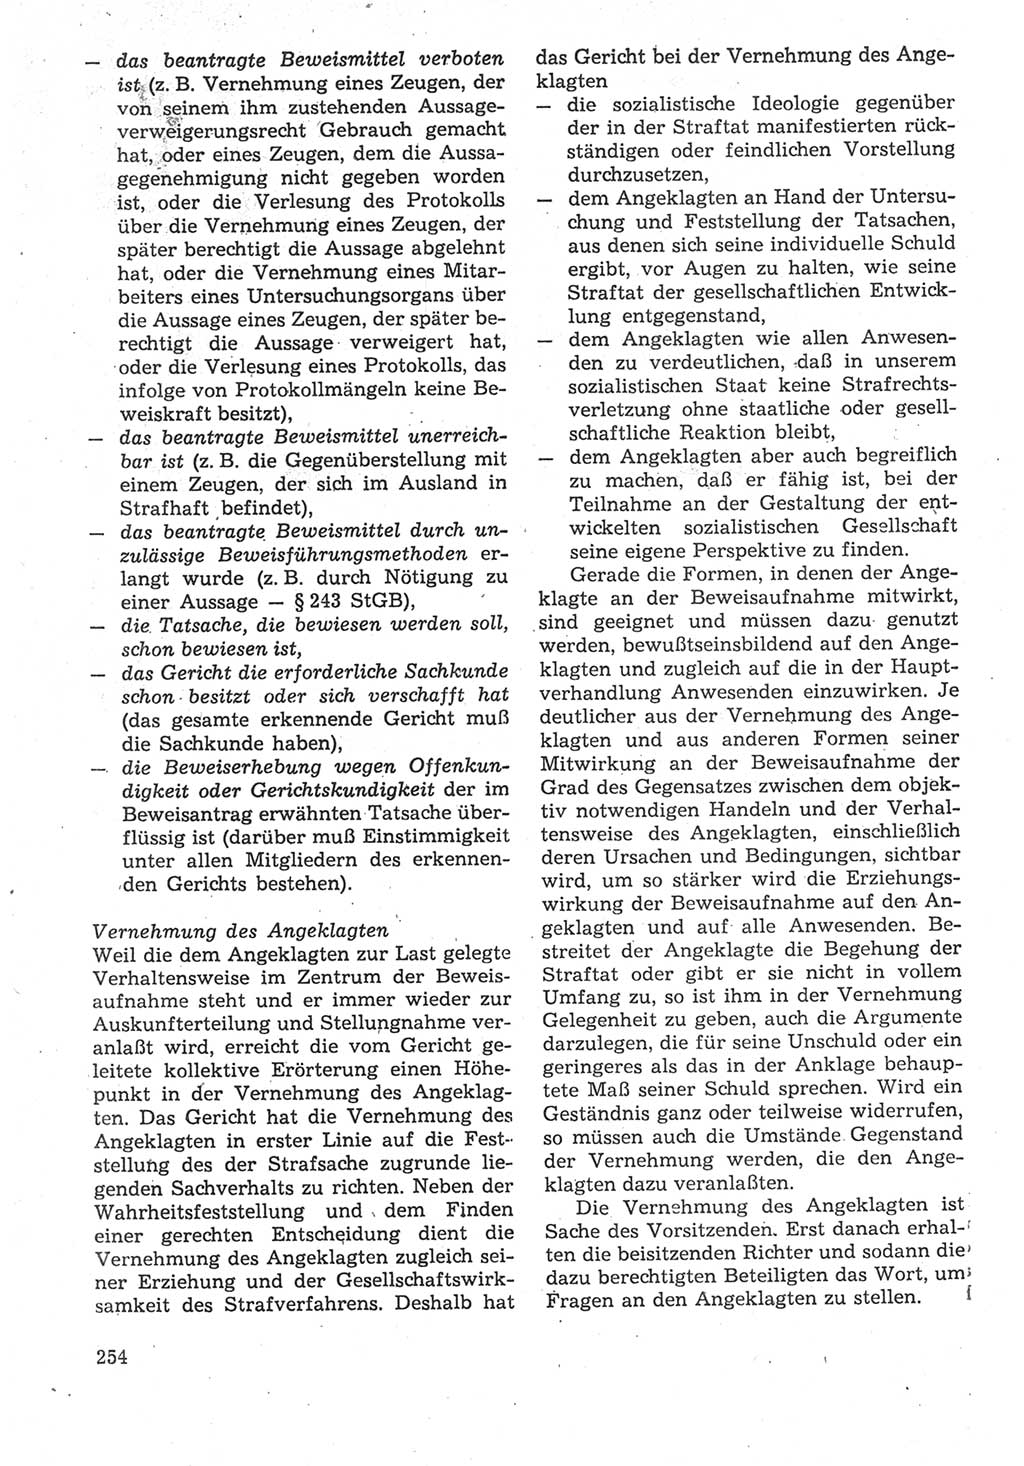 Strafverfahrensrecht [Deutsche Demokratische Republik (DDR)], Lehrbuch 1987, Seite 254 (Strafverf.-R. DDR Lb. 1987, S. 254)